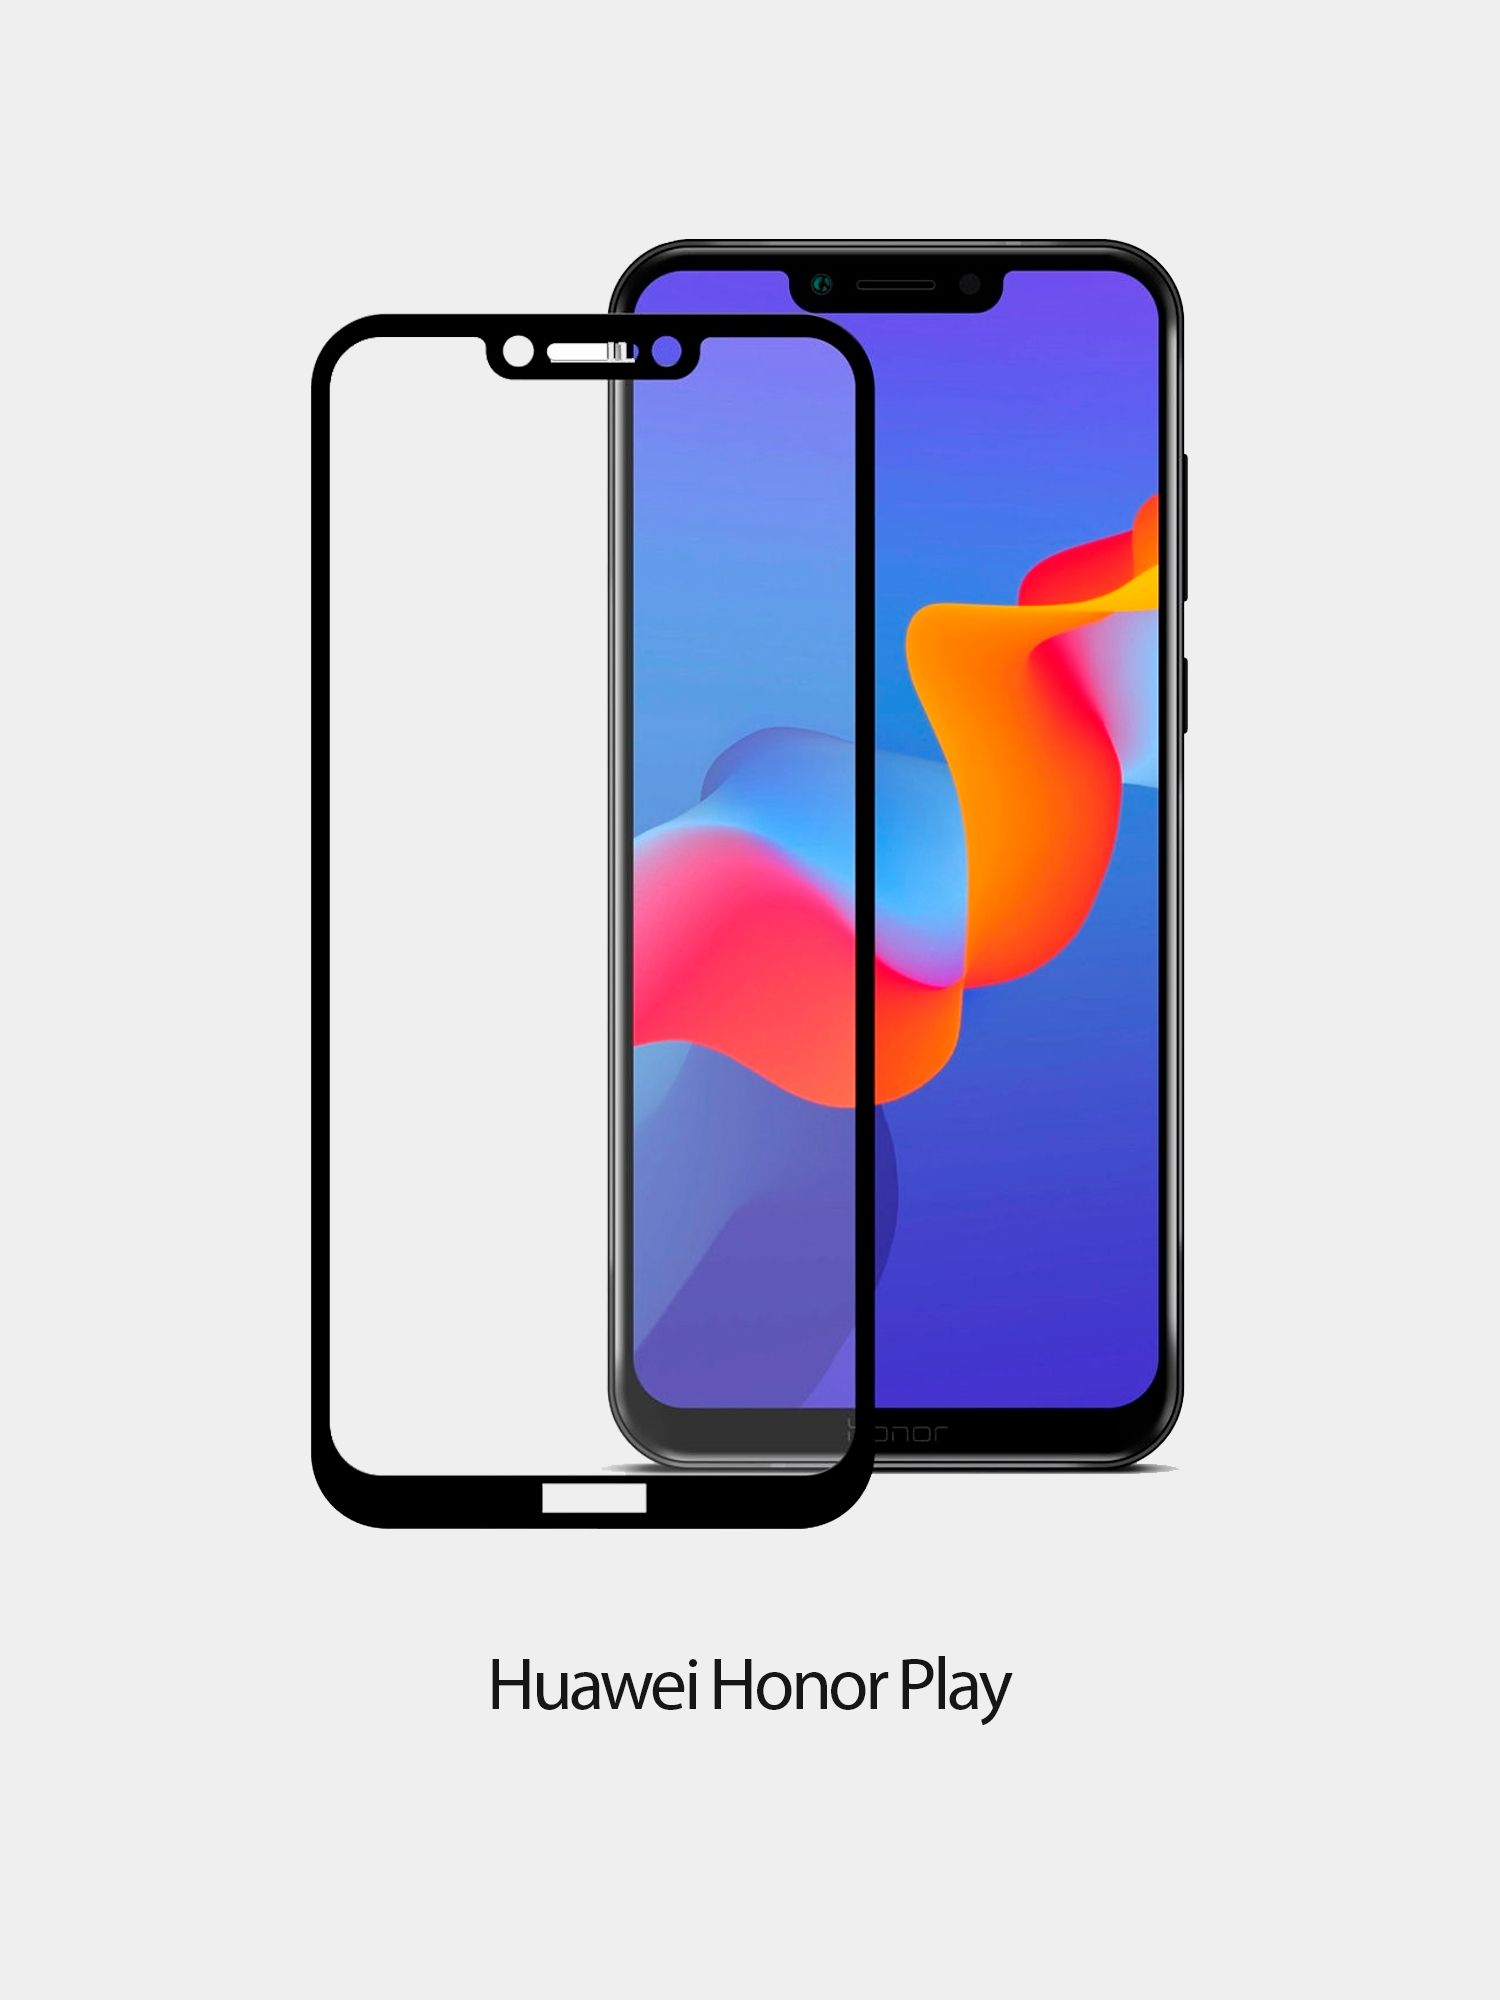 Huawei honor play